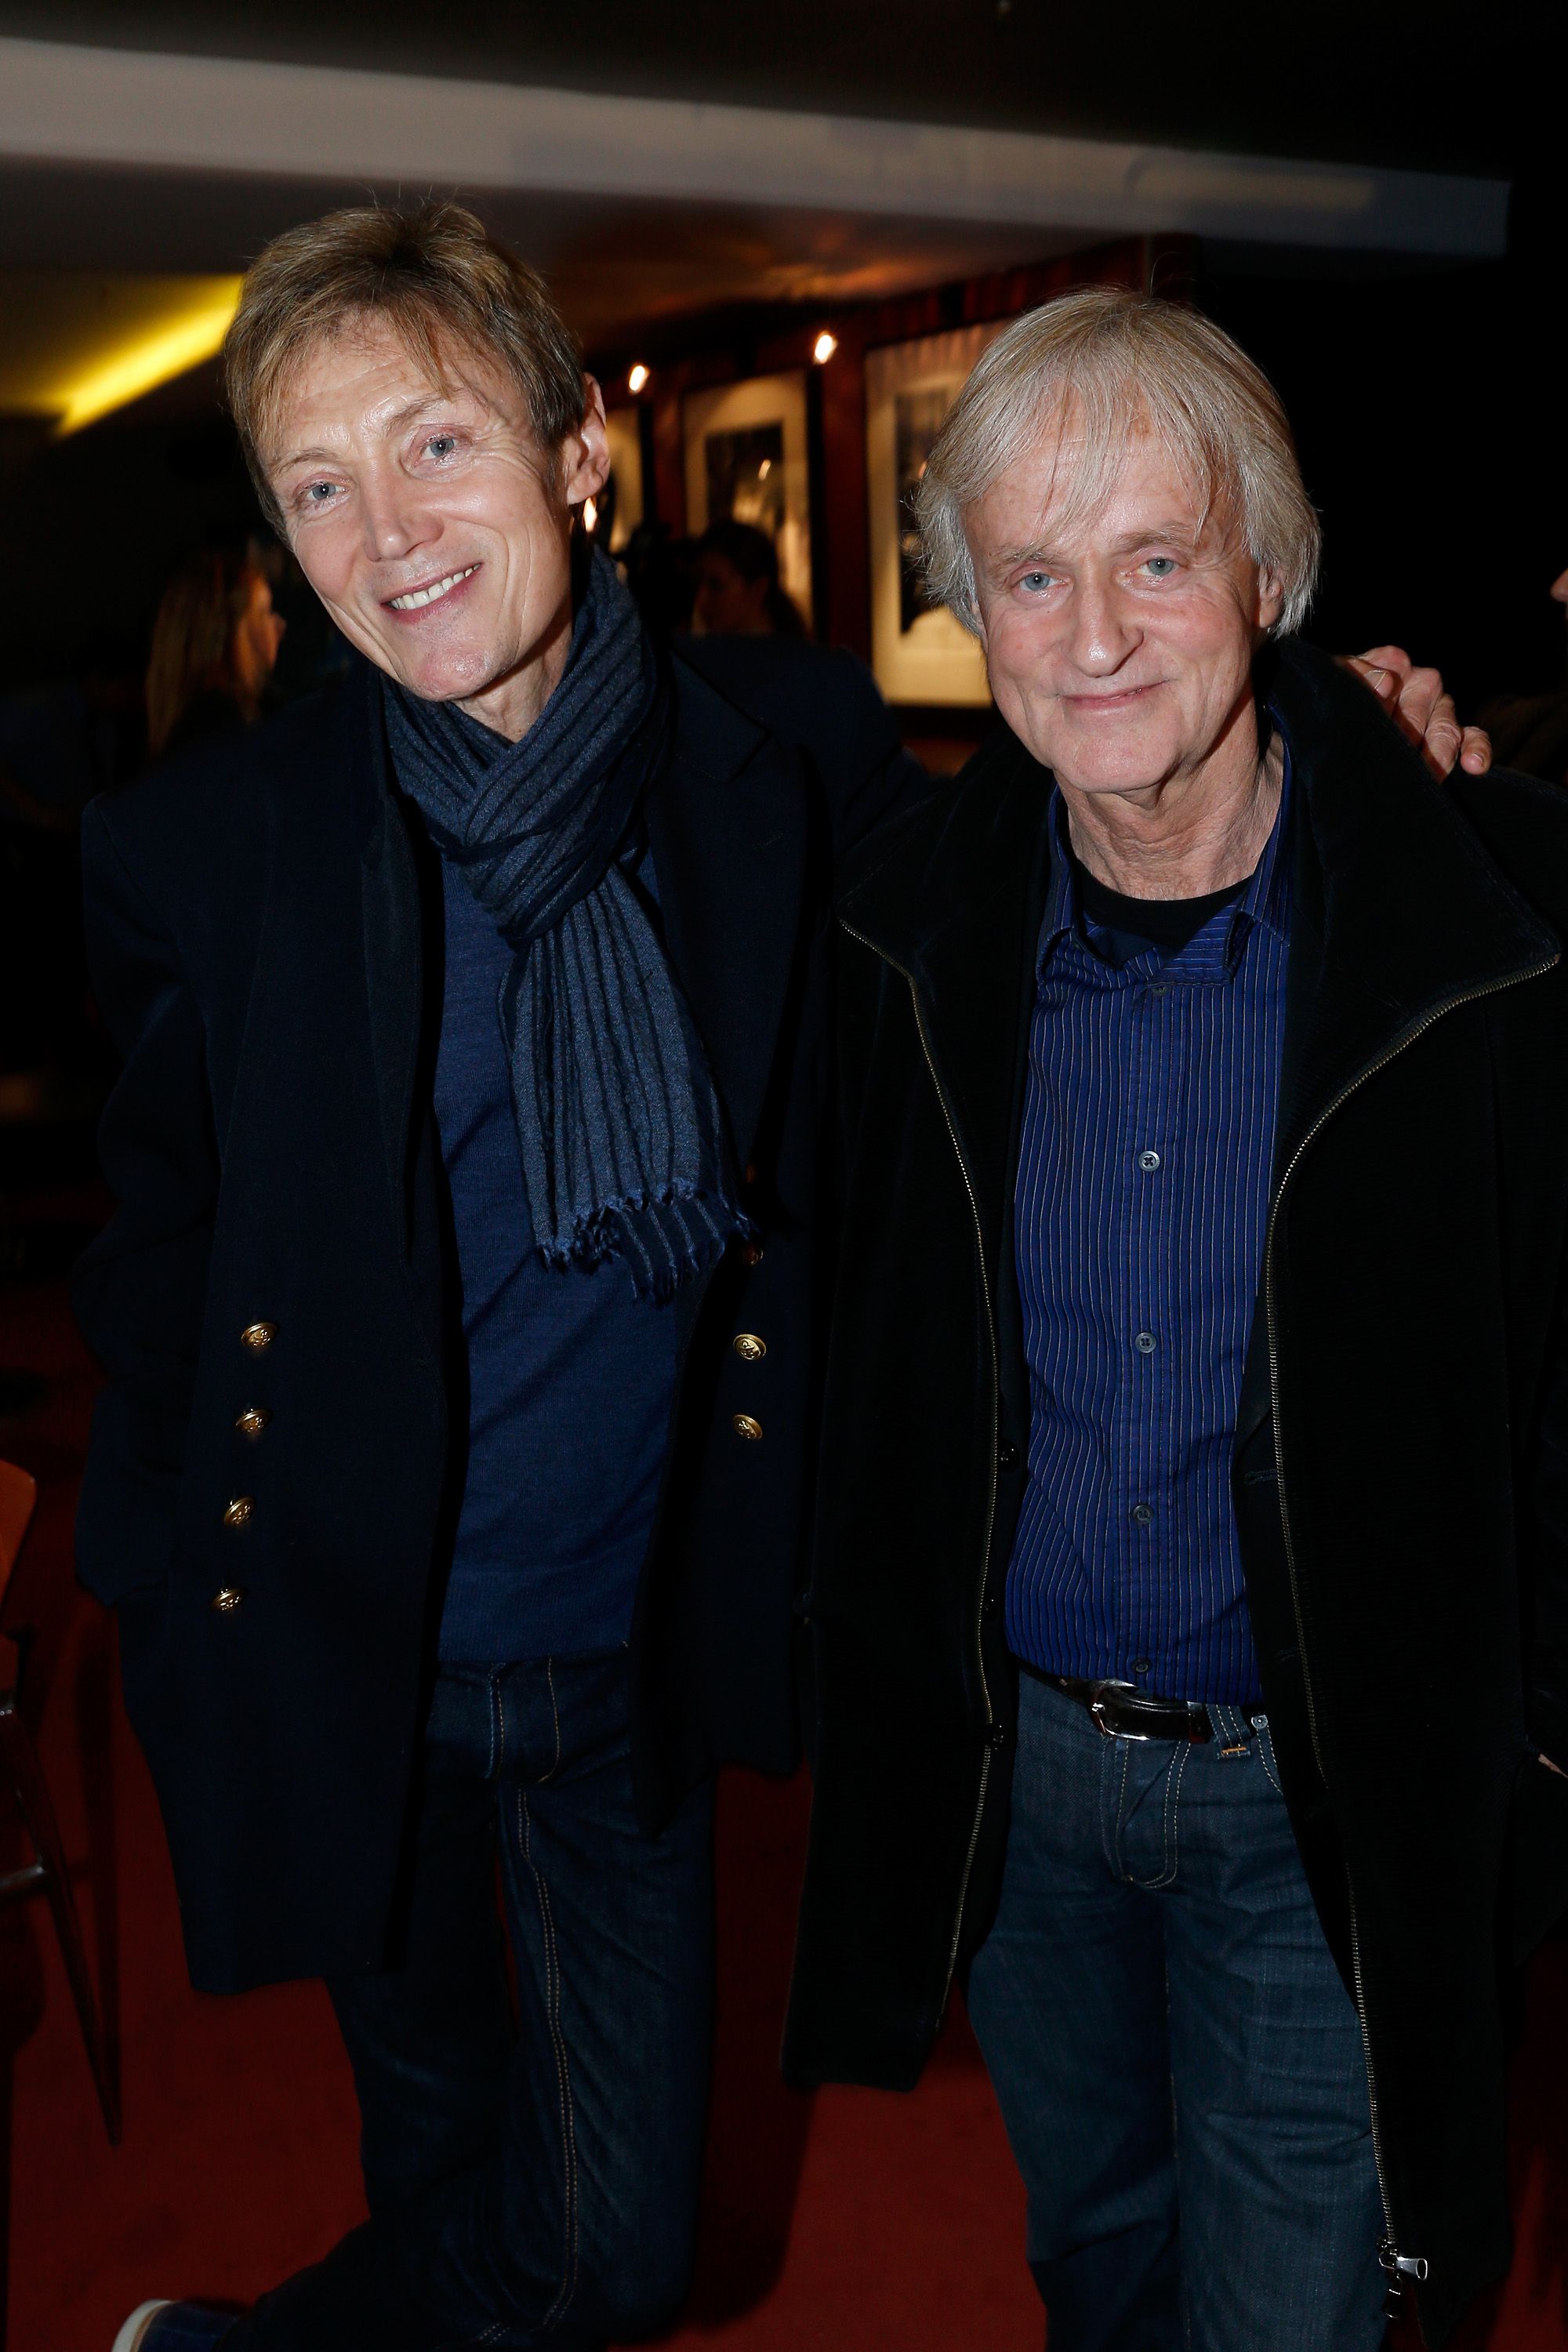 Le chanteur Dave et Patrick Loiseau à l'UGC Cine Cite des Halles le 25 mars 2013 à Paris, France. | Photo : Getty Images